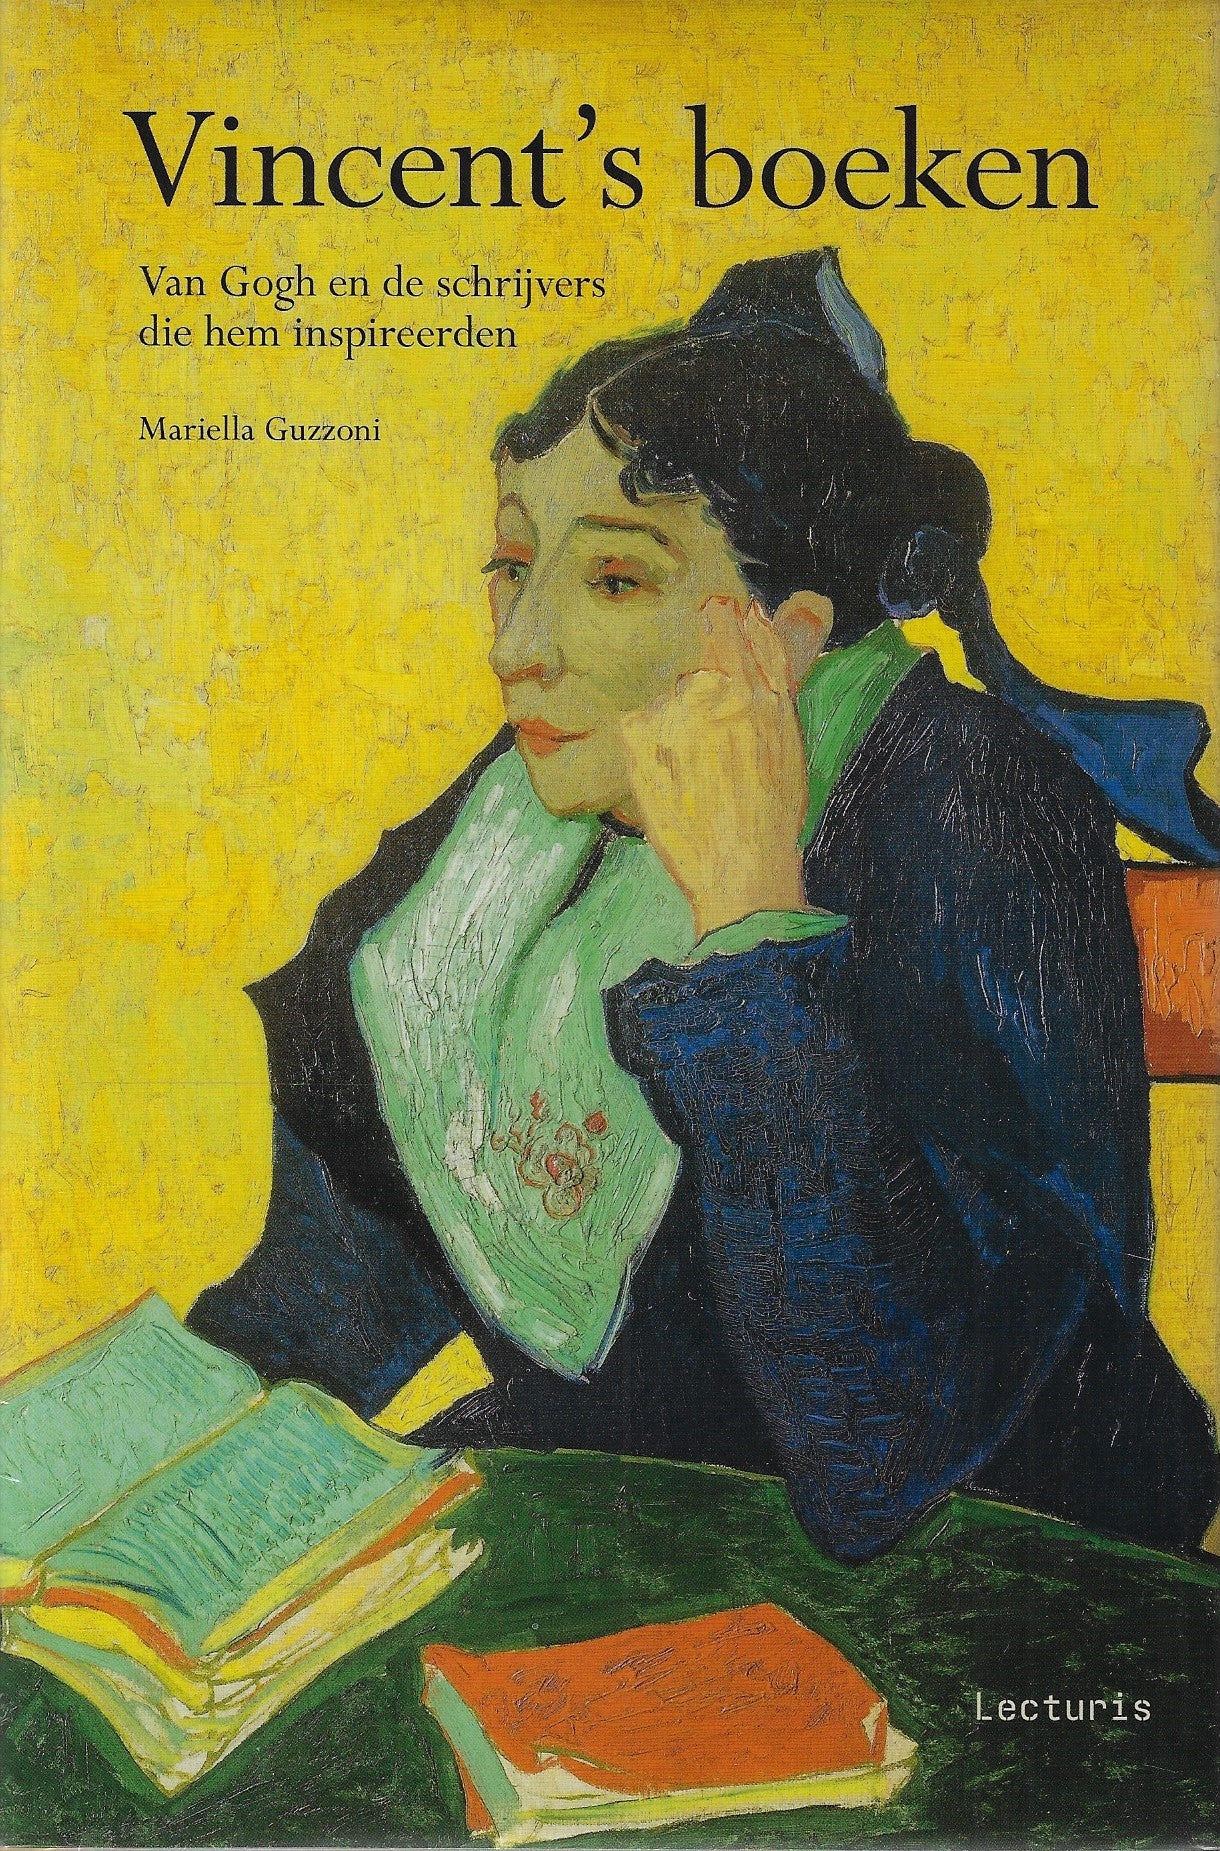 Vincent's boeken / Van Gogh en de schrijvers die hem inspireerden